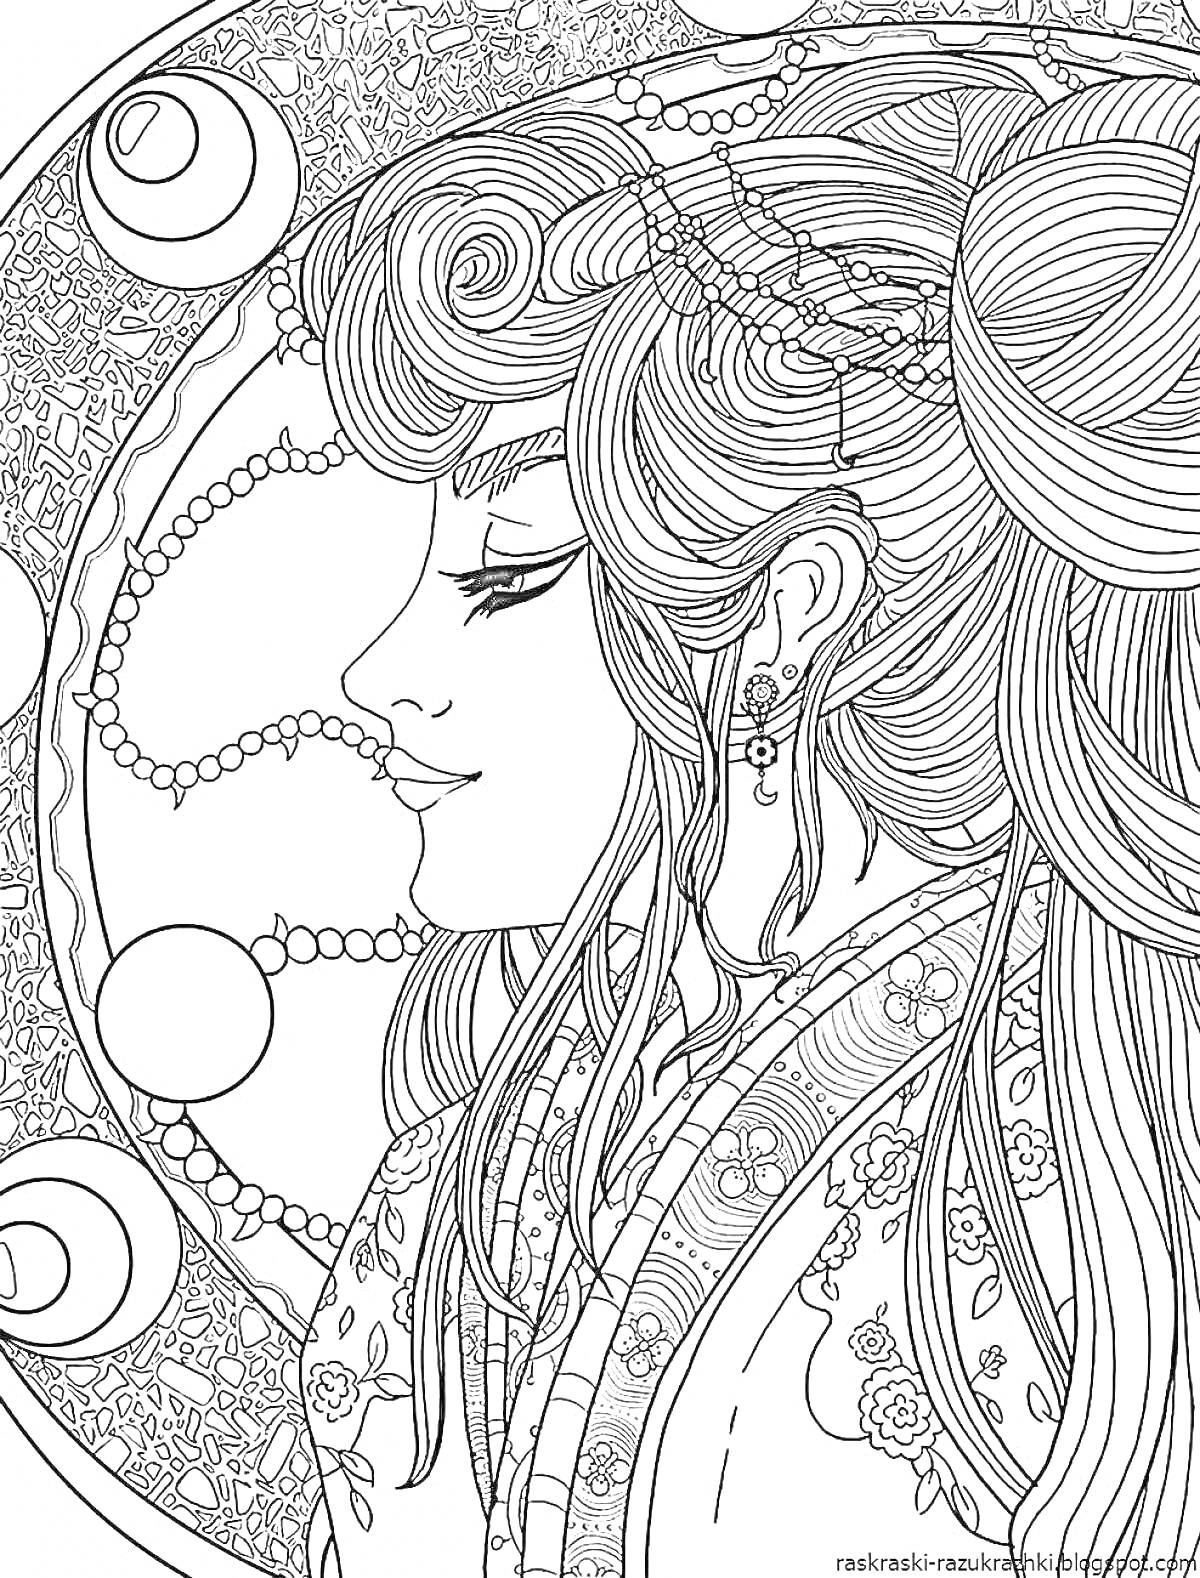 Раскраска Прекрасная девушка с длинными волосами и крупными украшениями на фоне орнаментального круга